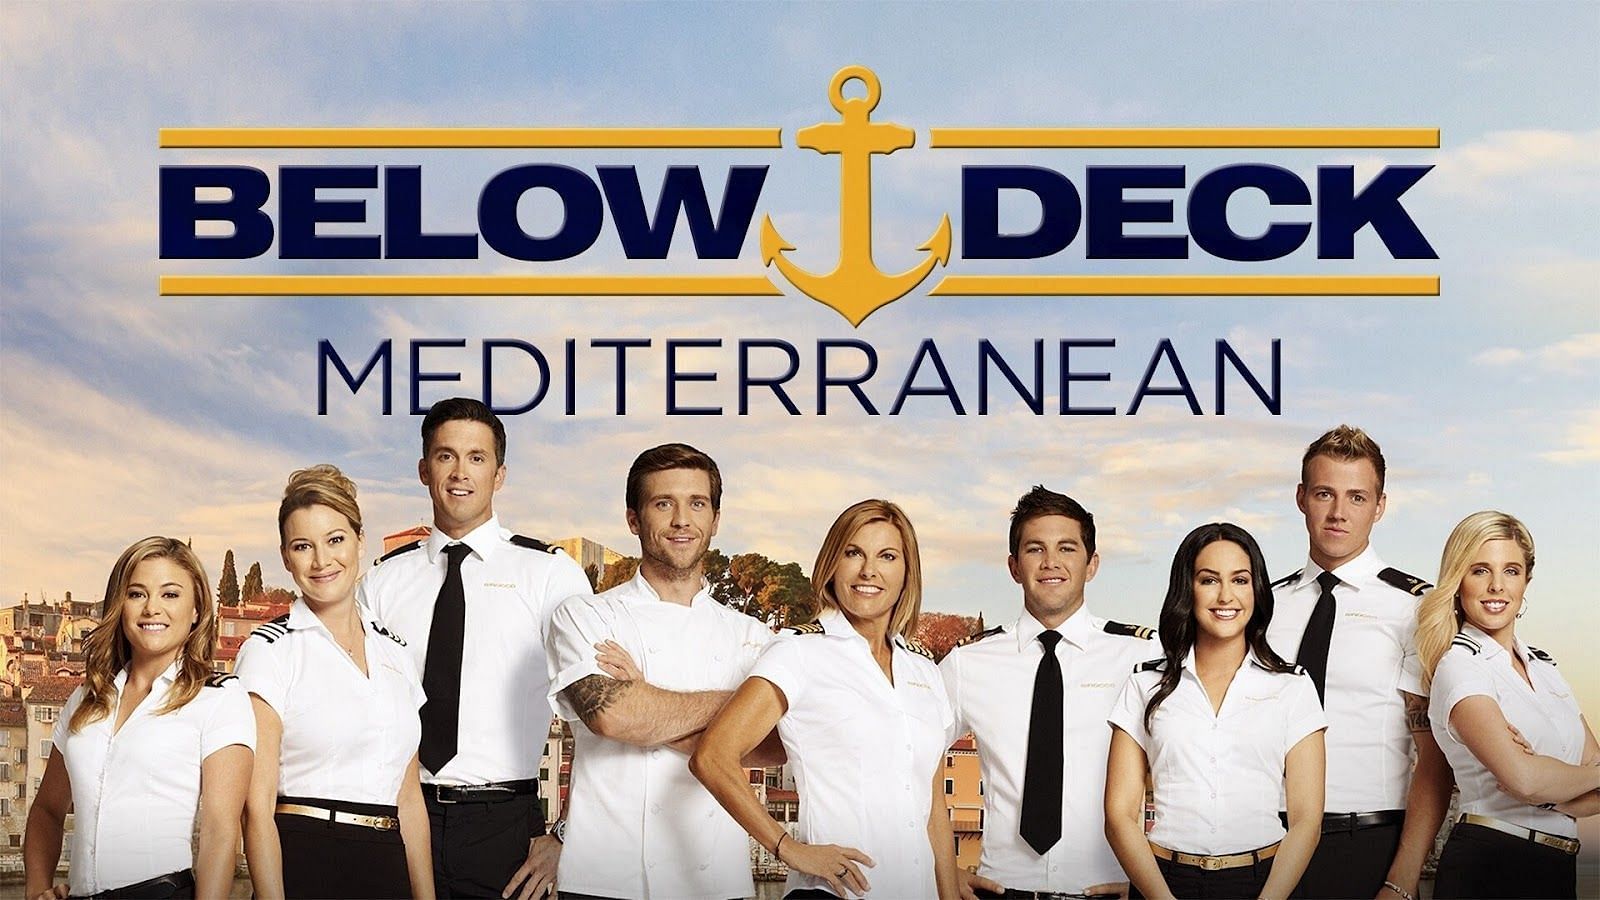 Cast of Below Deck Mediterranean